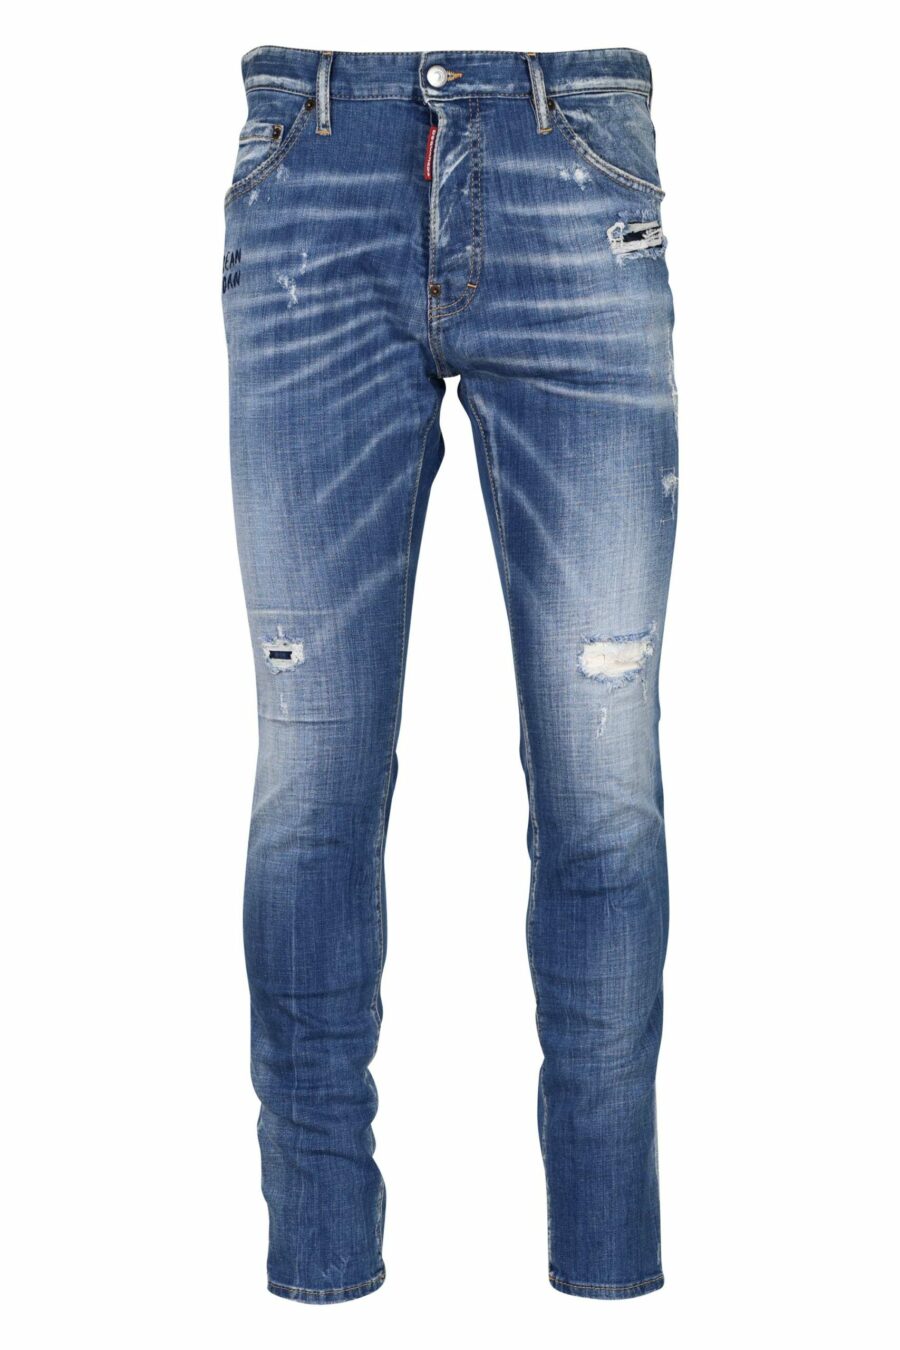 Hellblaue "cool guy jean"-Hose mit Halbschlitzen und halb abgenutzt - 8054148311414 skaliert